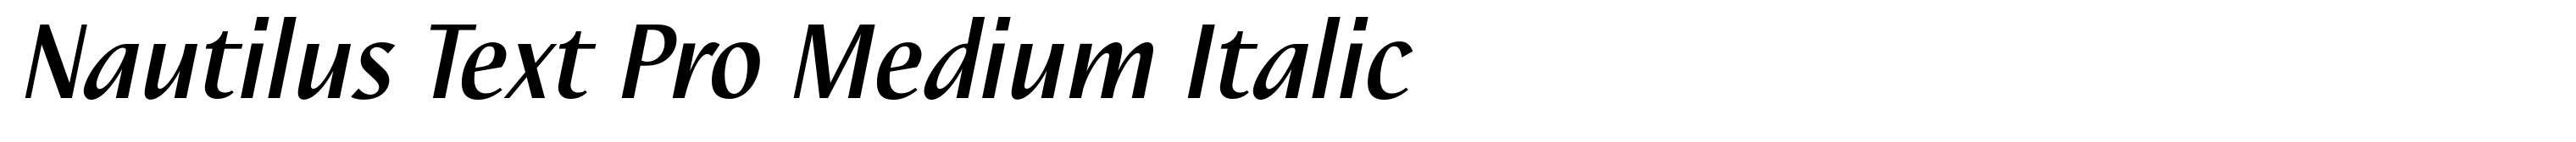 Nautilus Text Pro Medium Italic